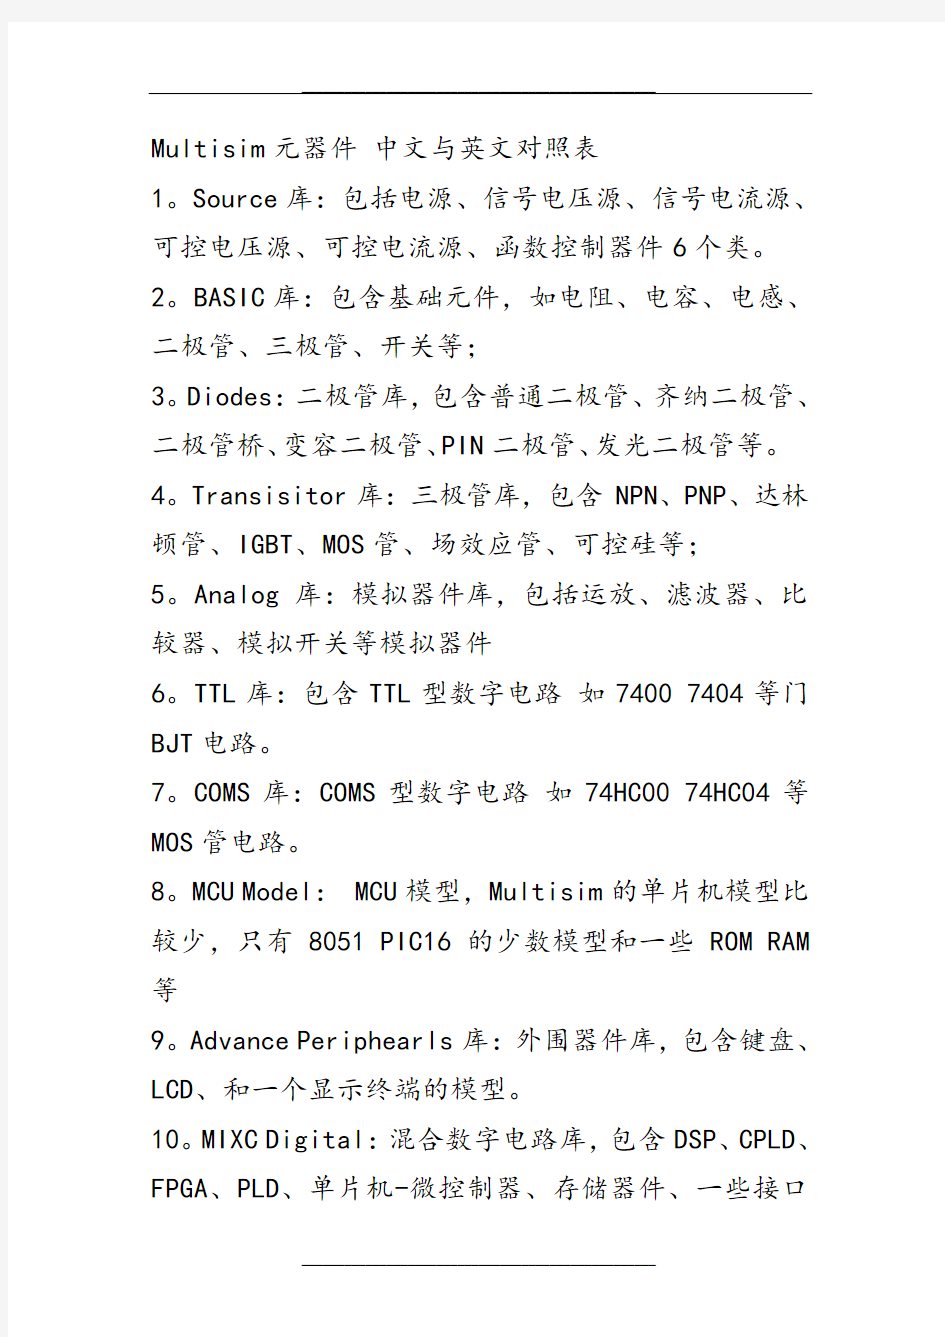 Multisim元器件-中文与英文对照表